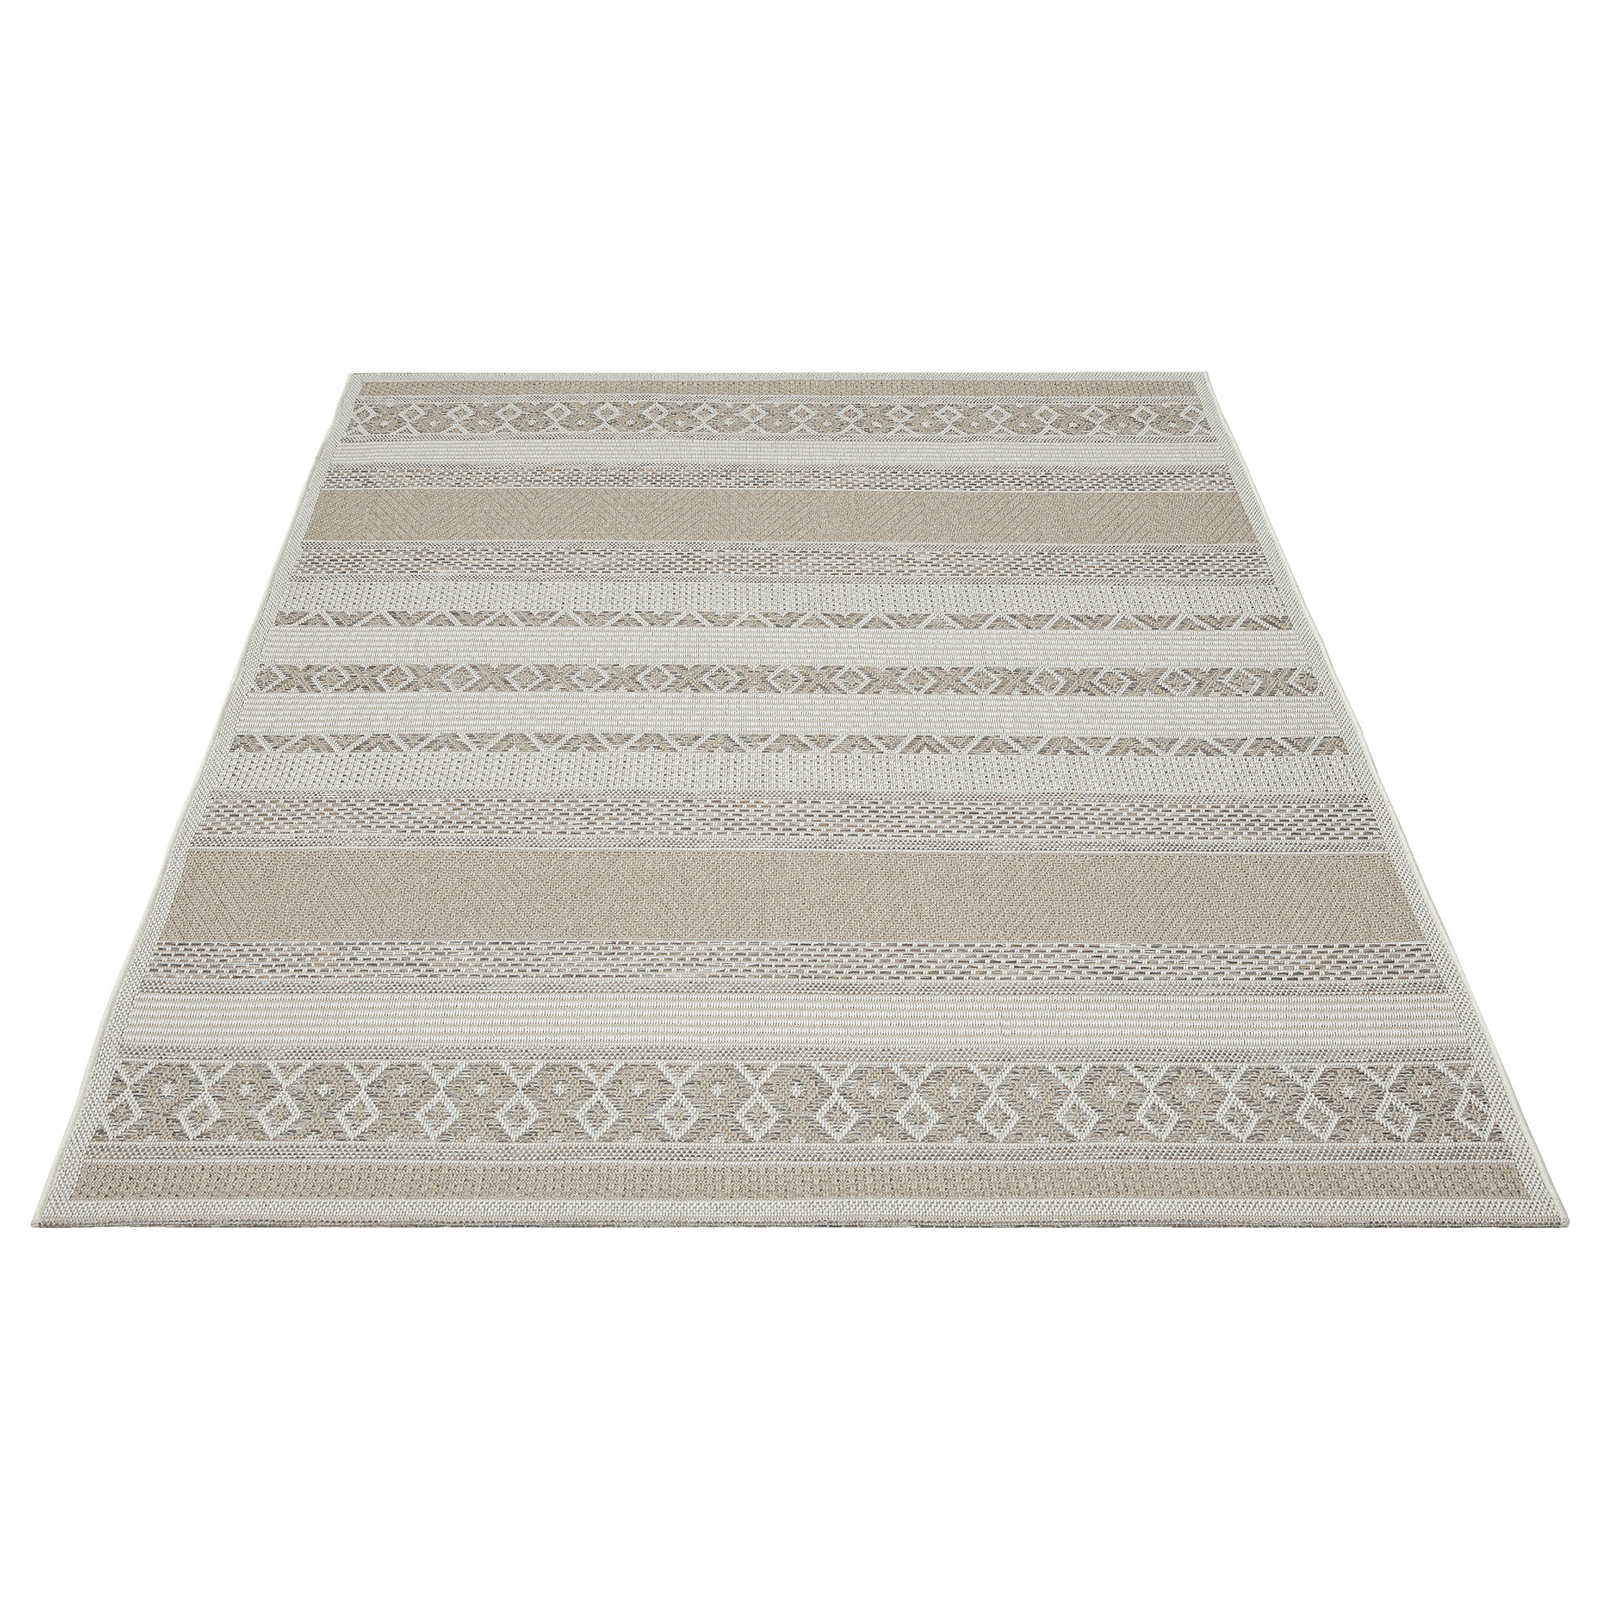 Outdoor Teppich aus Flachgewebe in schlichten Beige – 280 x 200 cm
